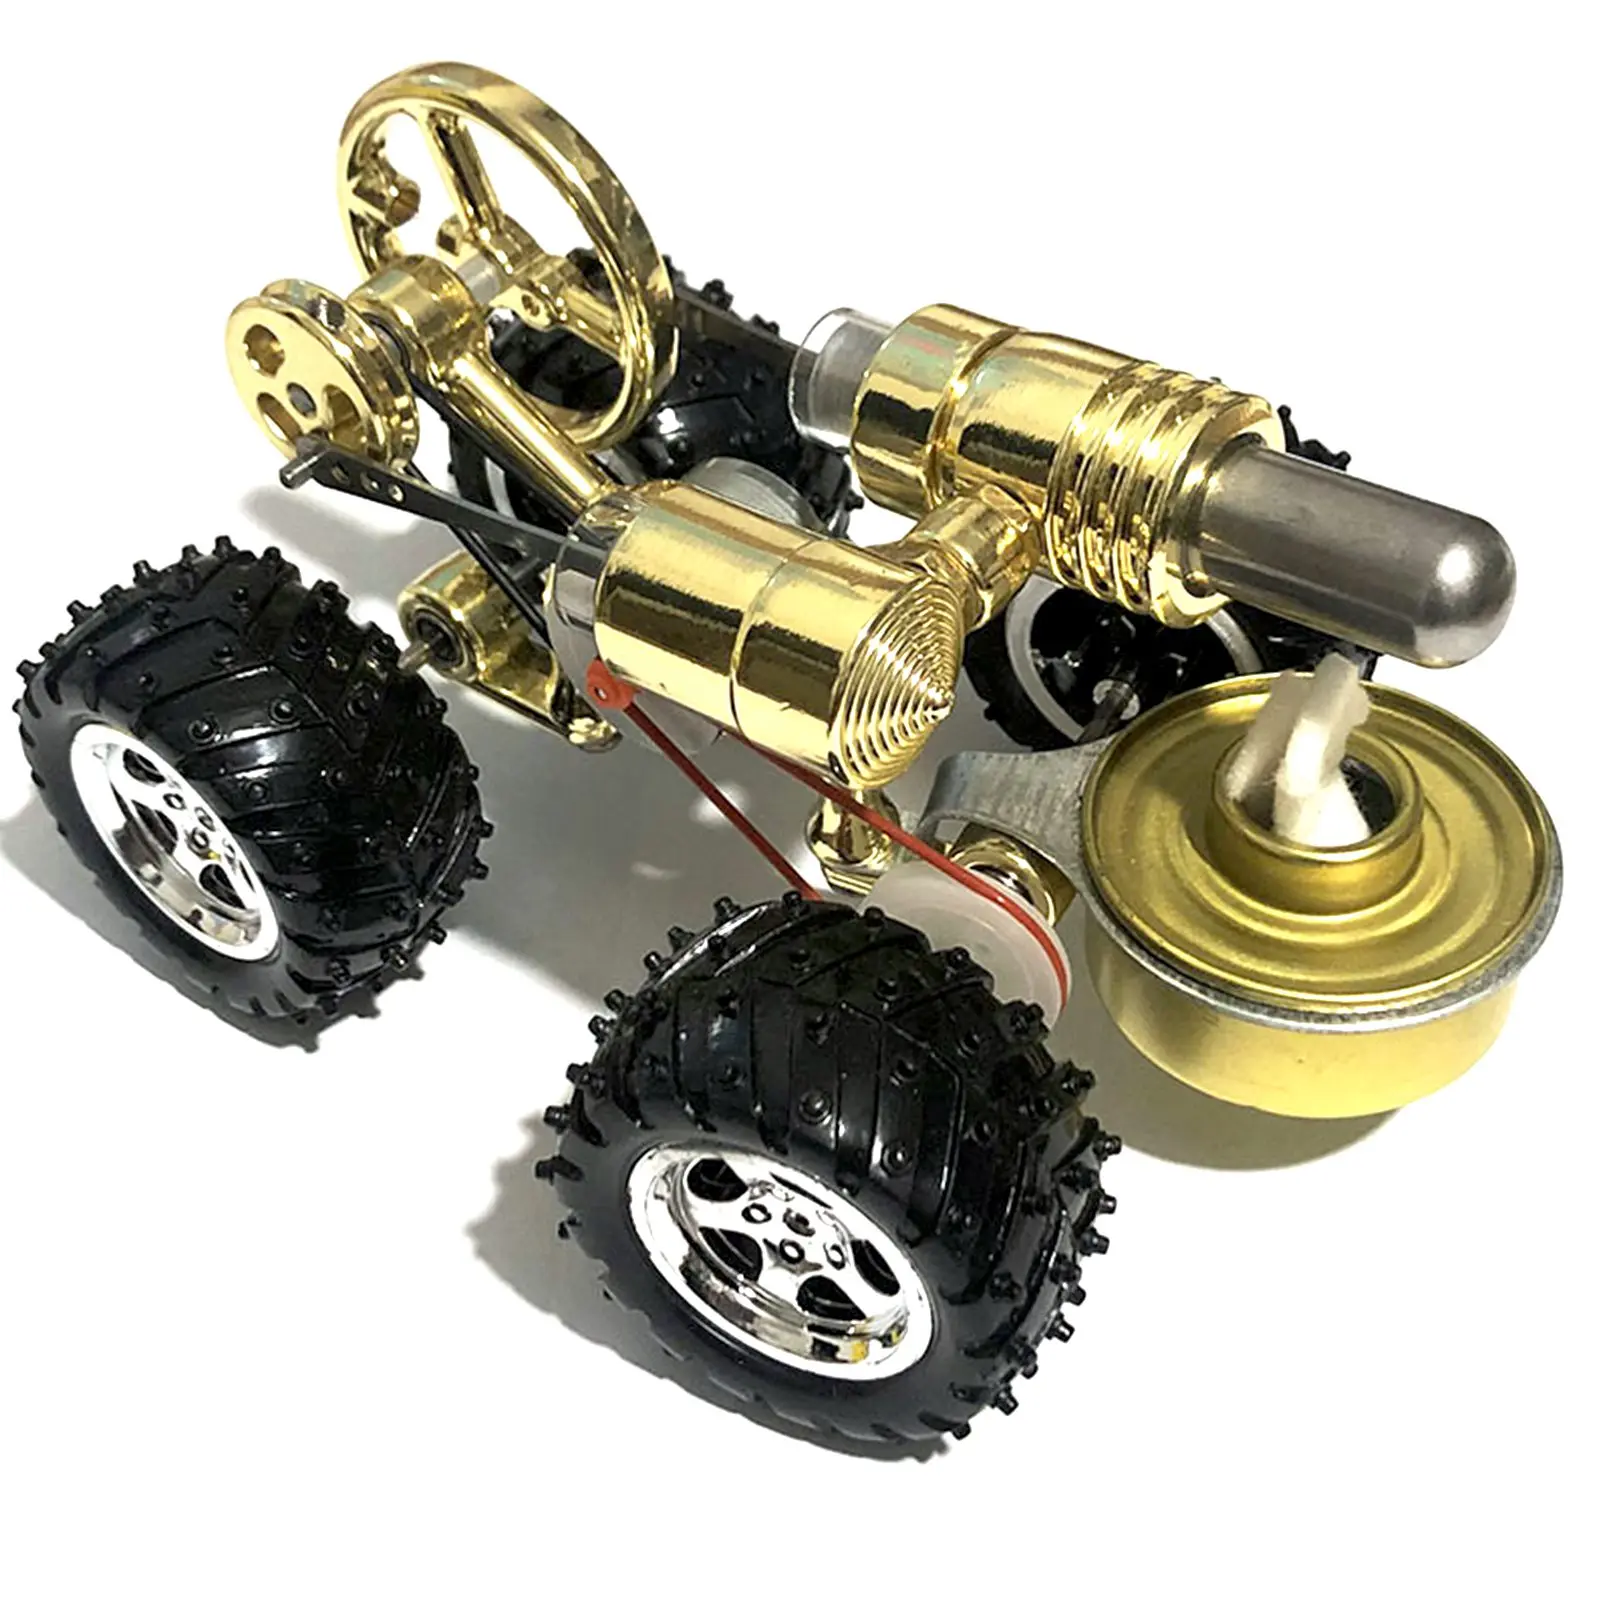 Модель двигателя Стирлинга модель автомобиля образовательная физика